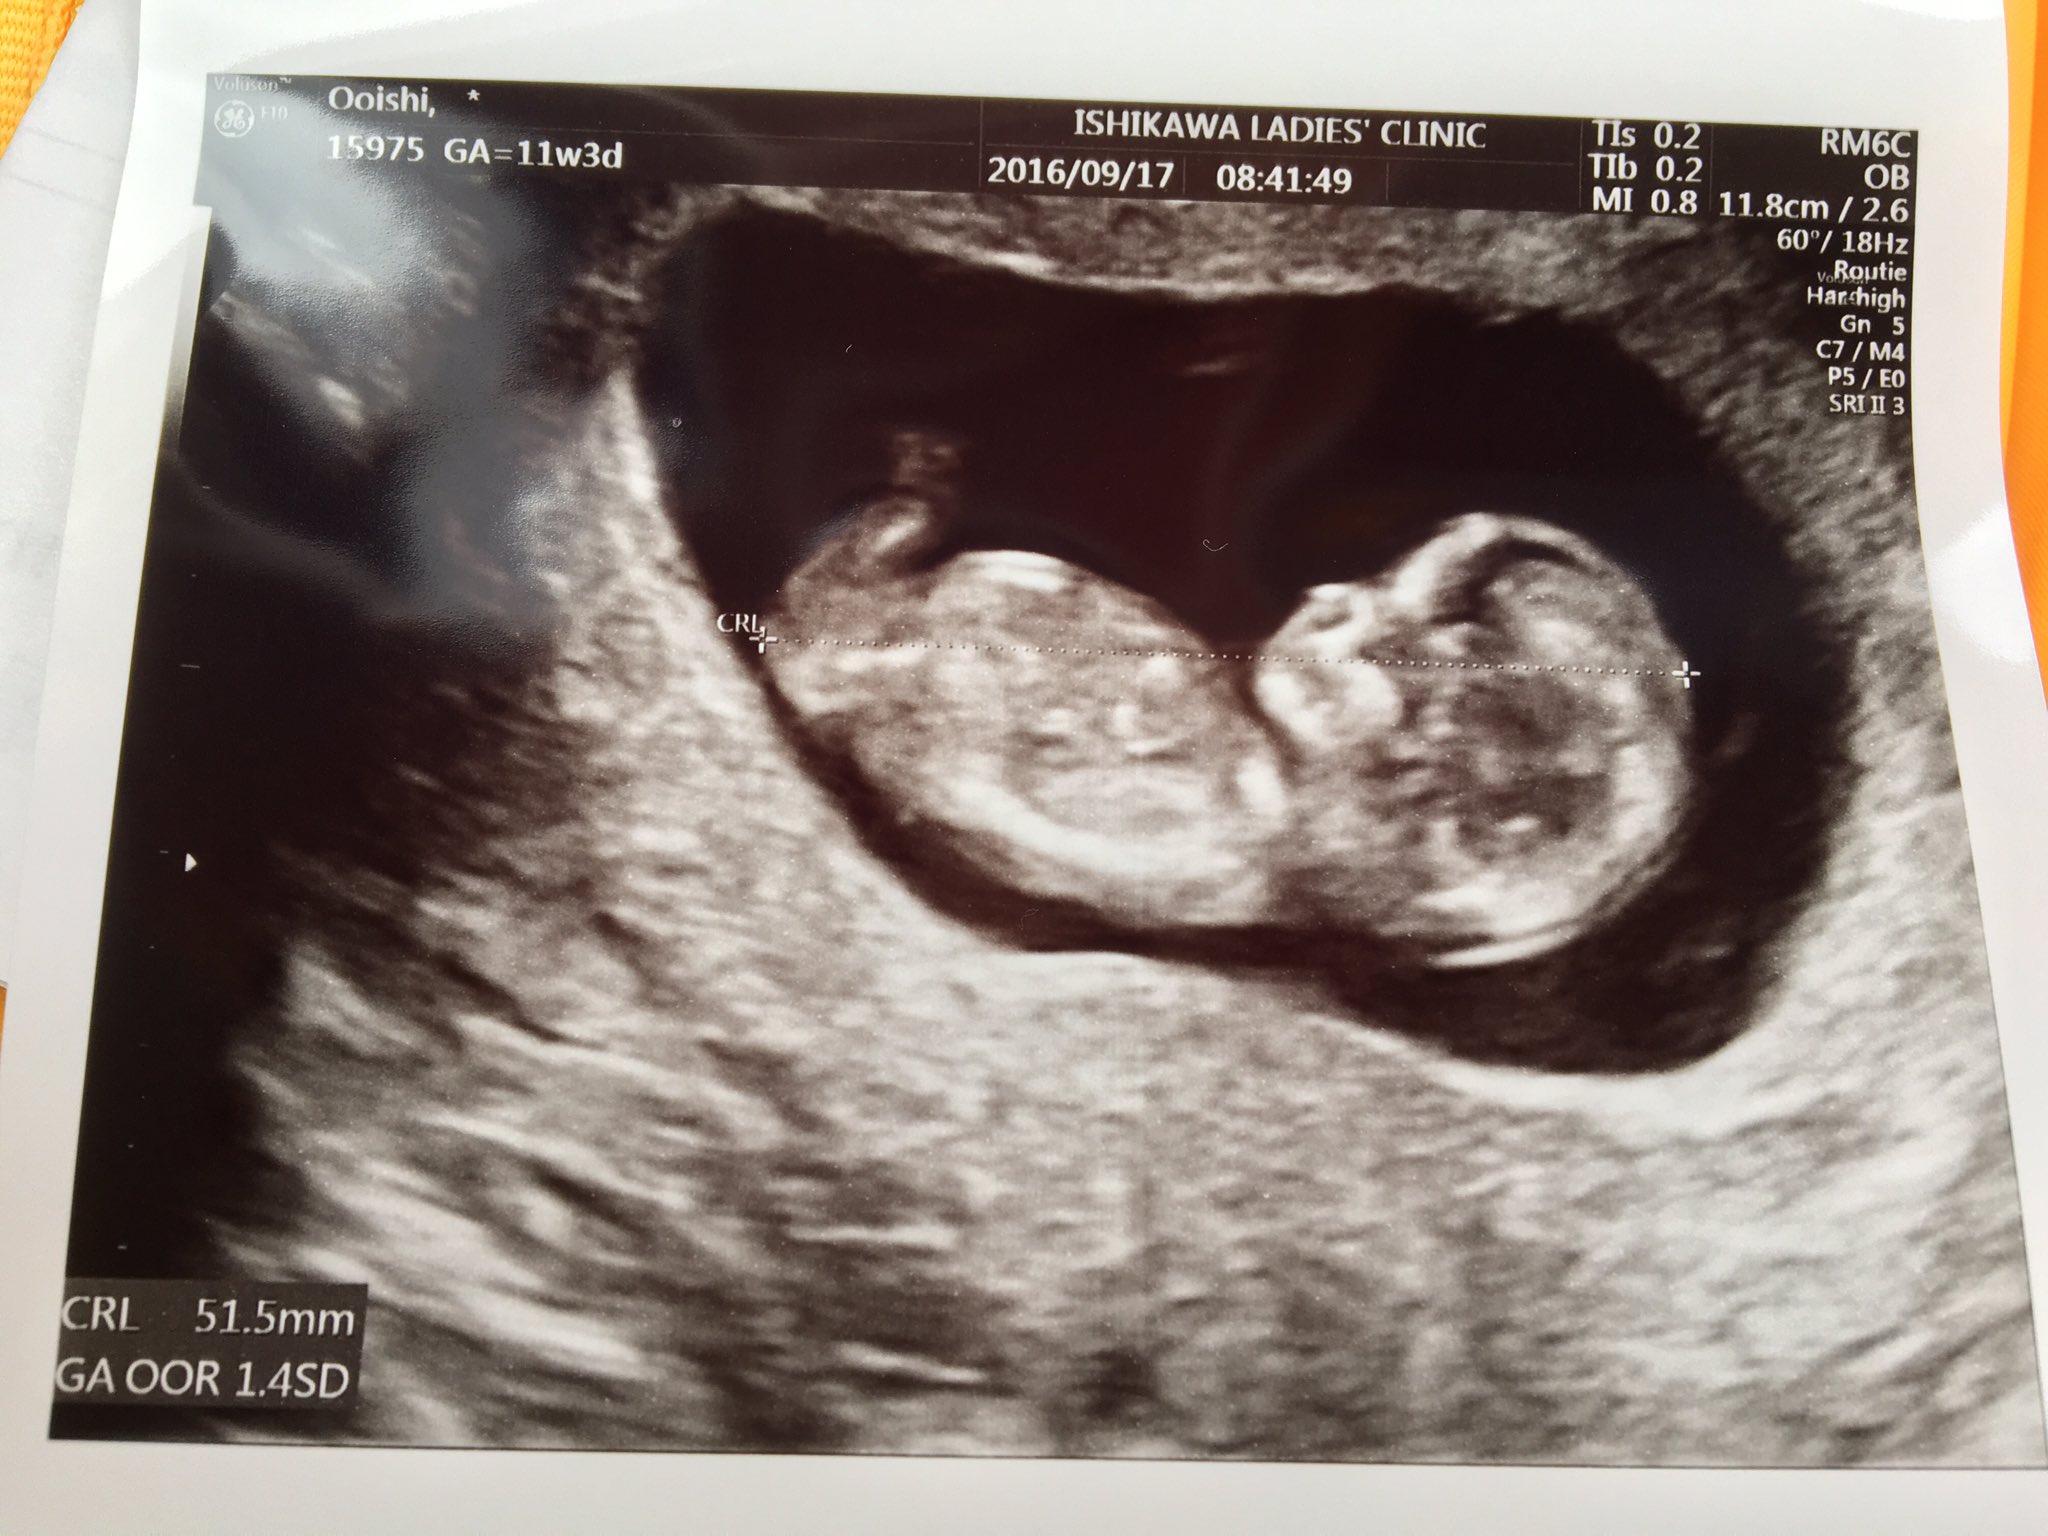 ツナぱんだ なんだ 妊娠成立後 2回目の受診 お腹の子は すくすく成長してくれていた ありがとう 妊娠 11週頃にもらったこのエコー写真は宝物 妊娠 エコー T Co Trmjxpo0lv Twitter